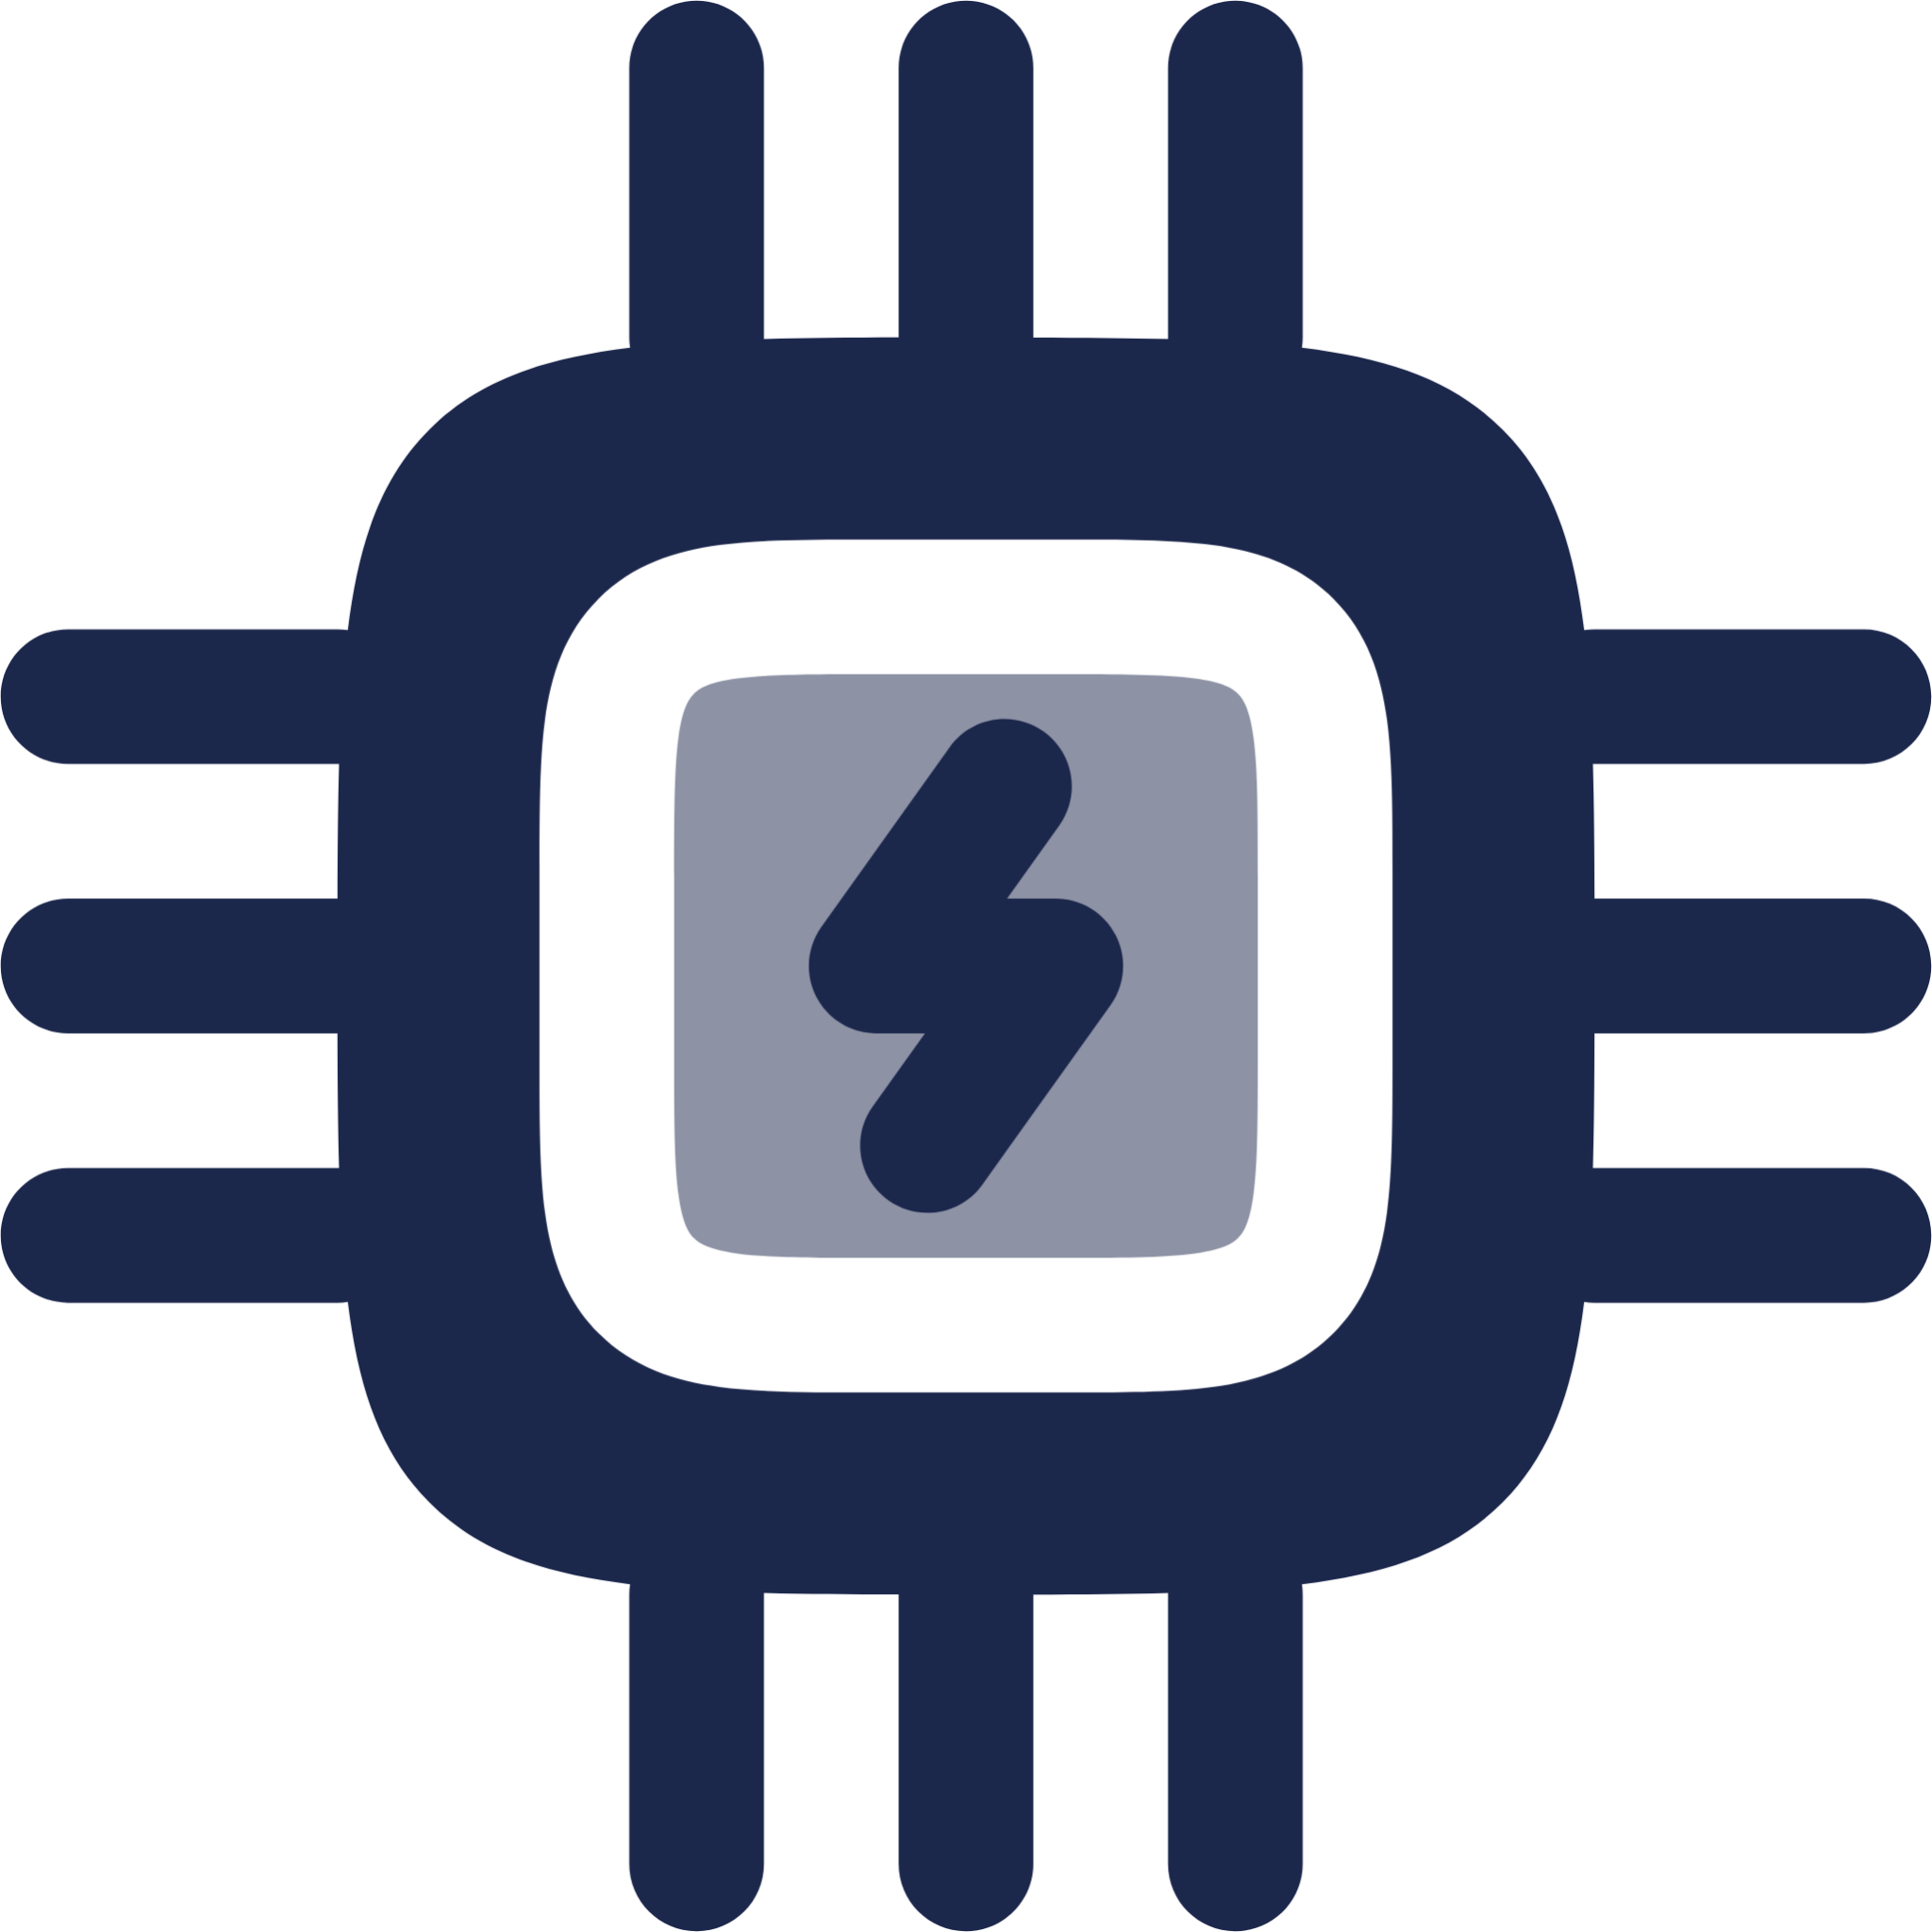 CPU Bolt icon